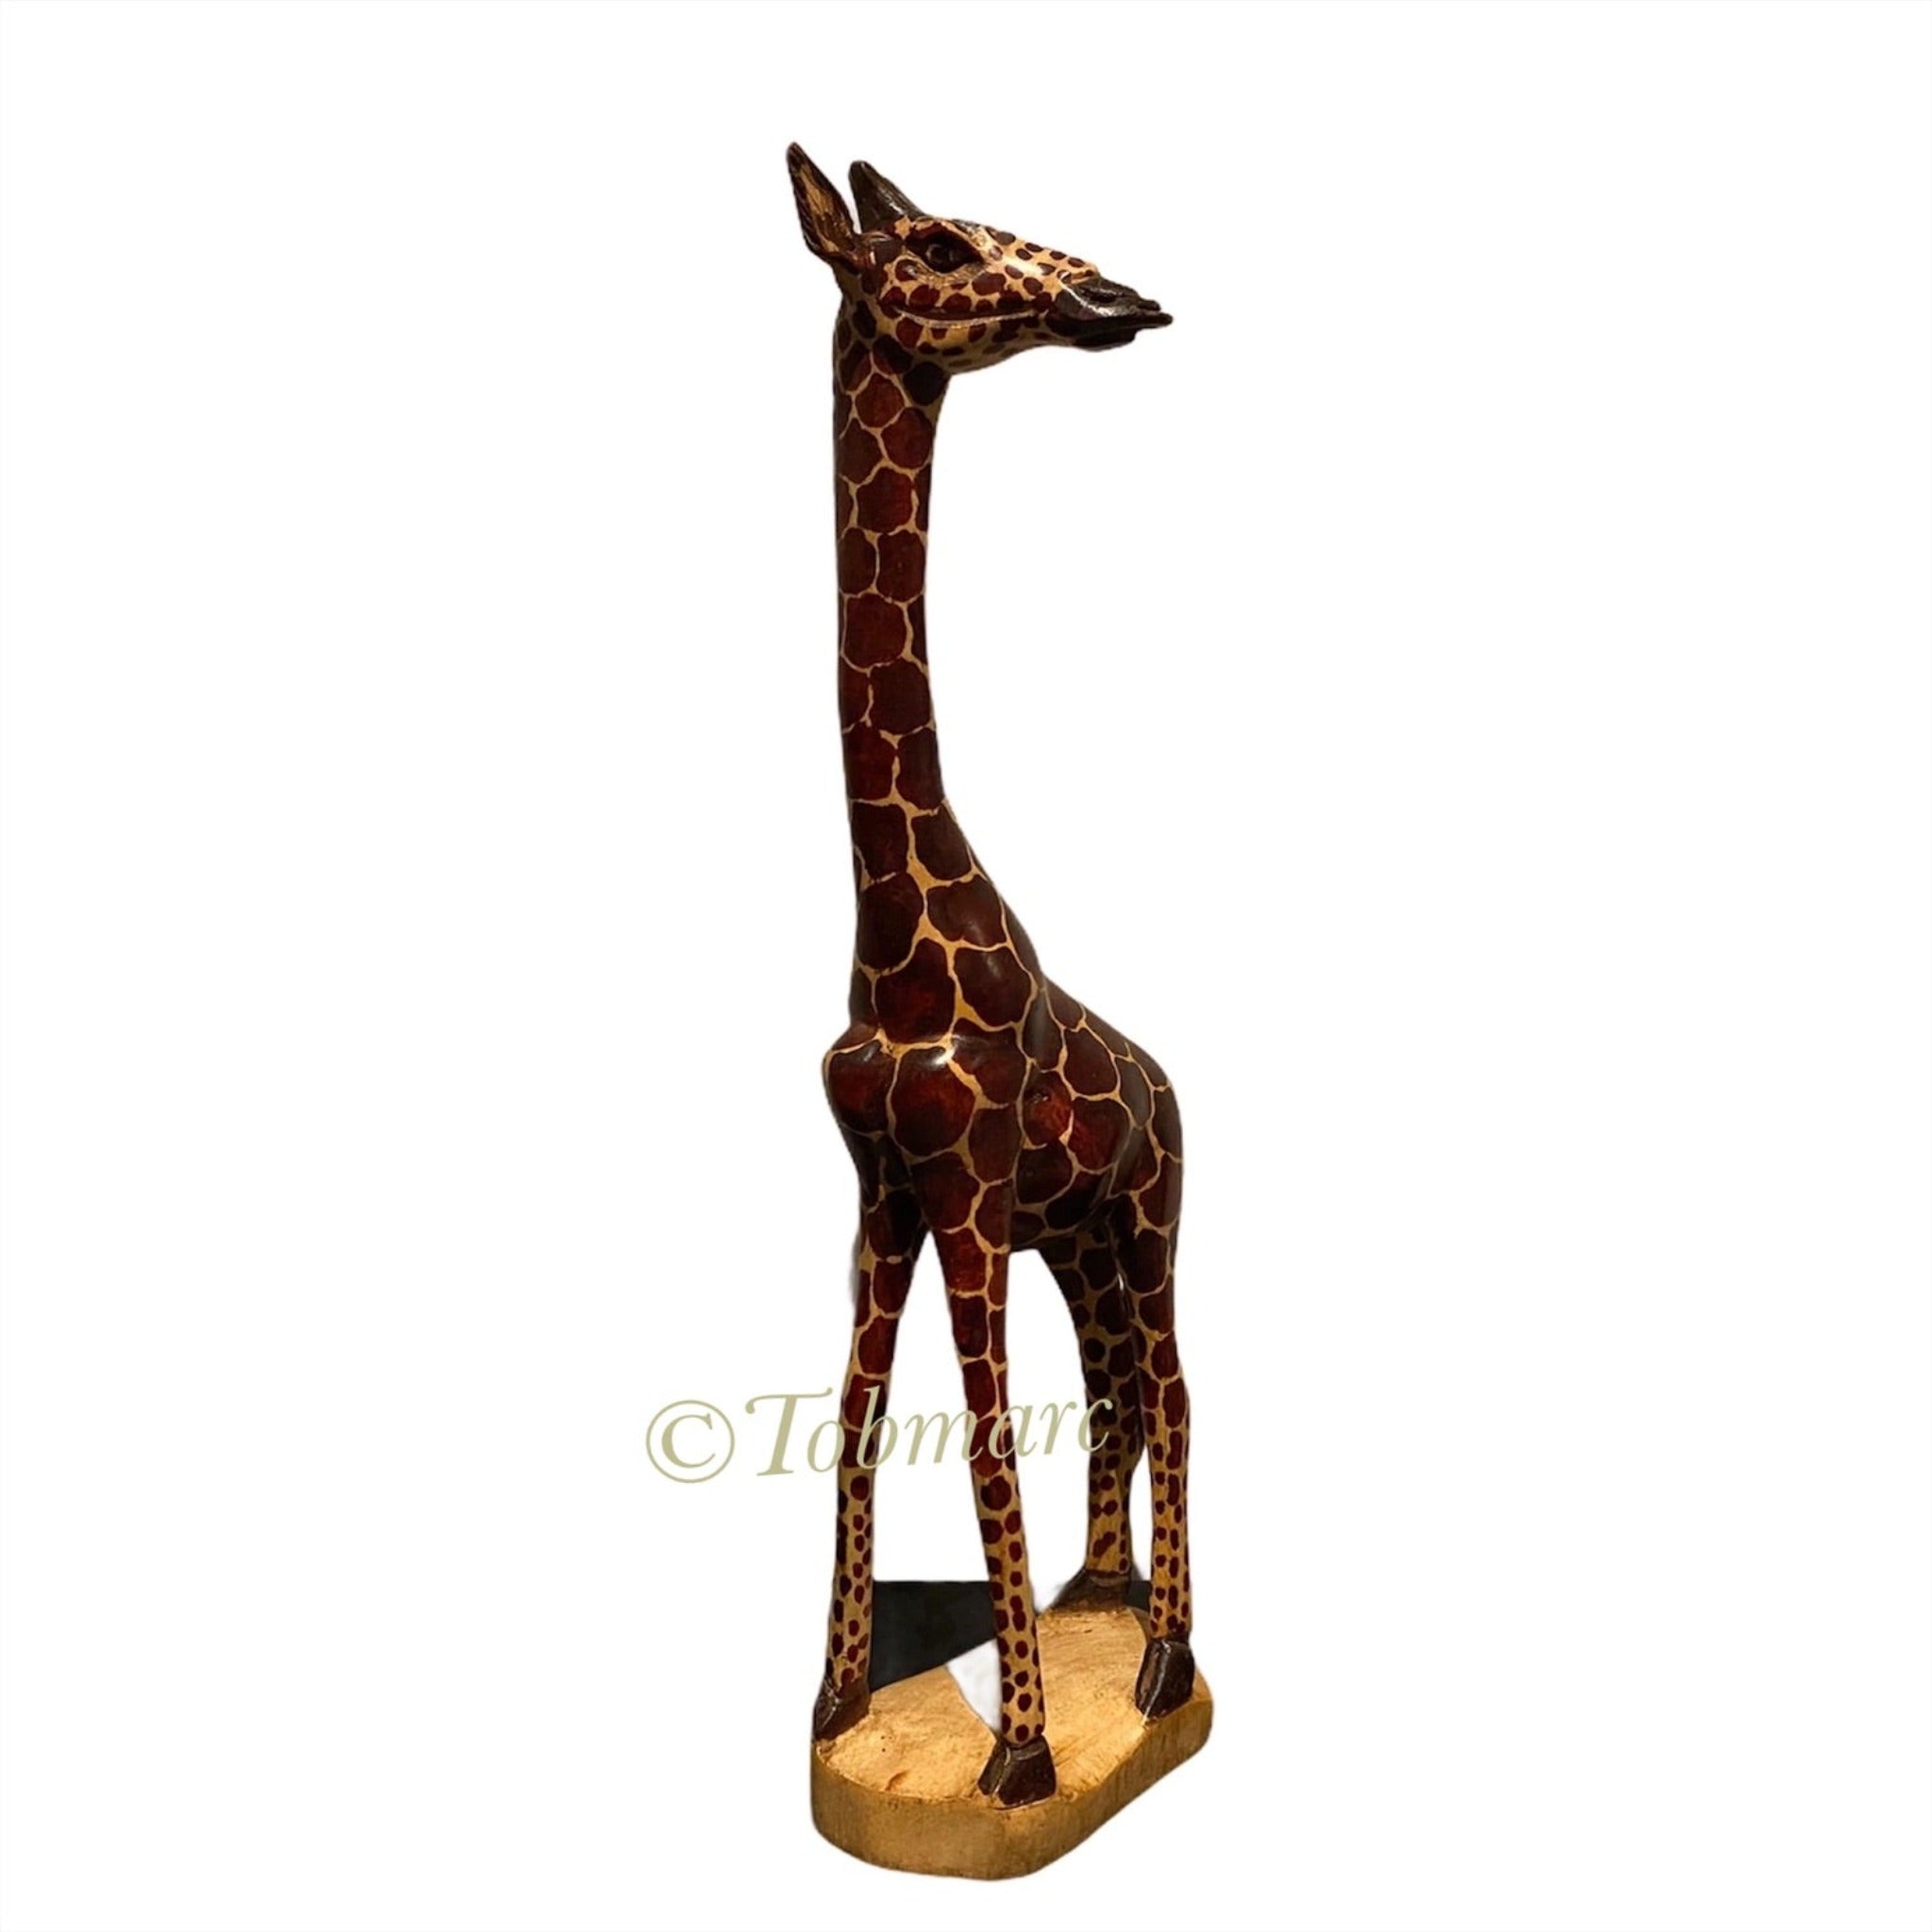 18” Wooden Giraffe sculpture, African Handcrafted Giraffe, decor - Tobmarc Home Decor & Gifts 